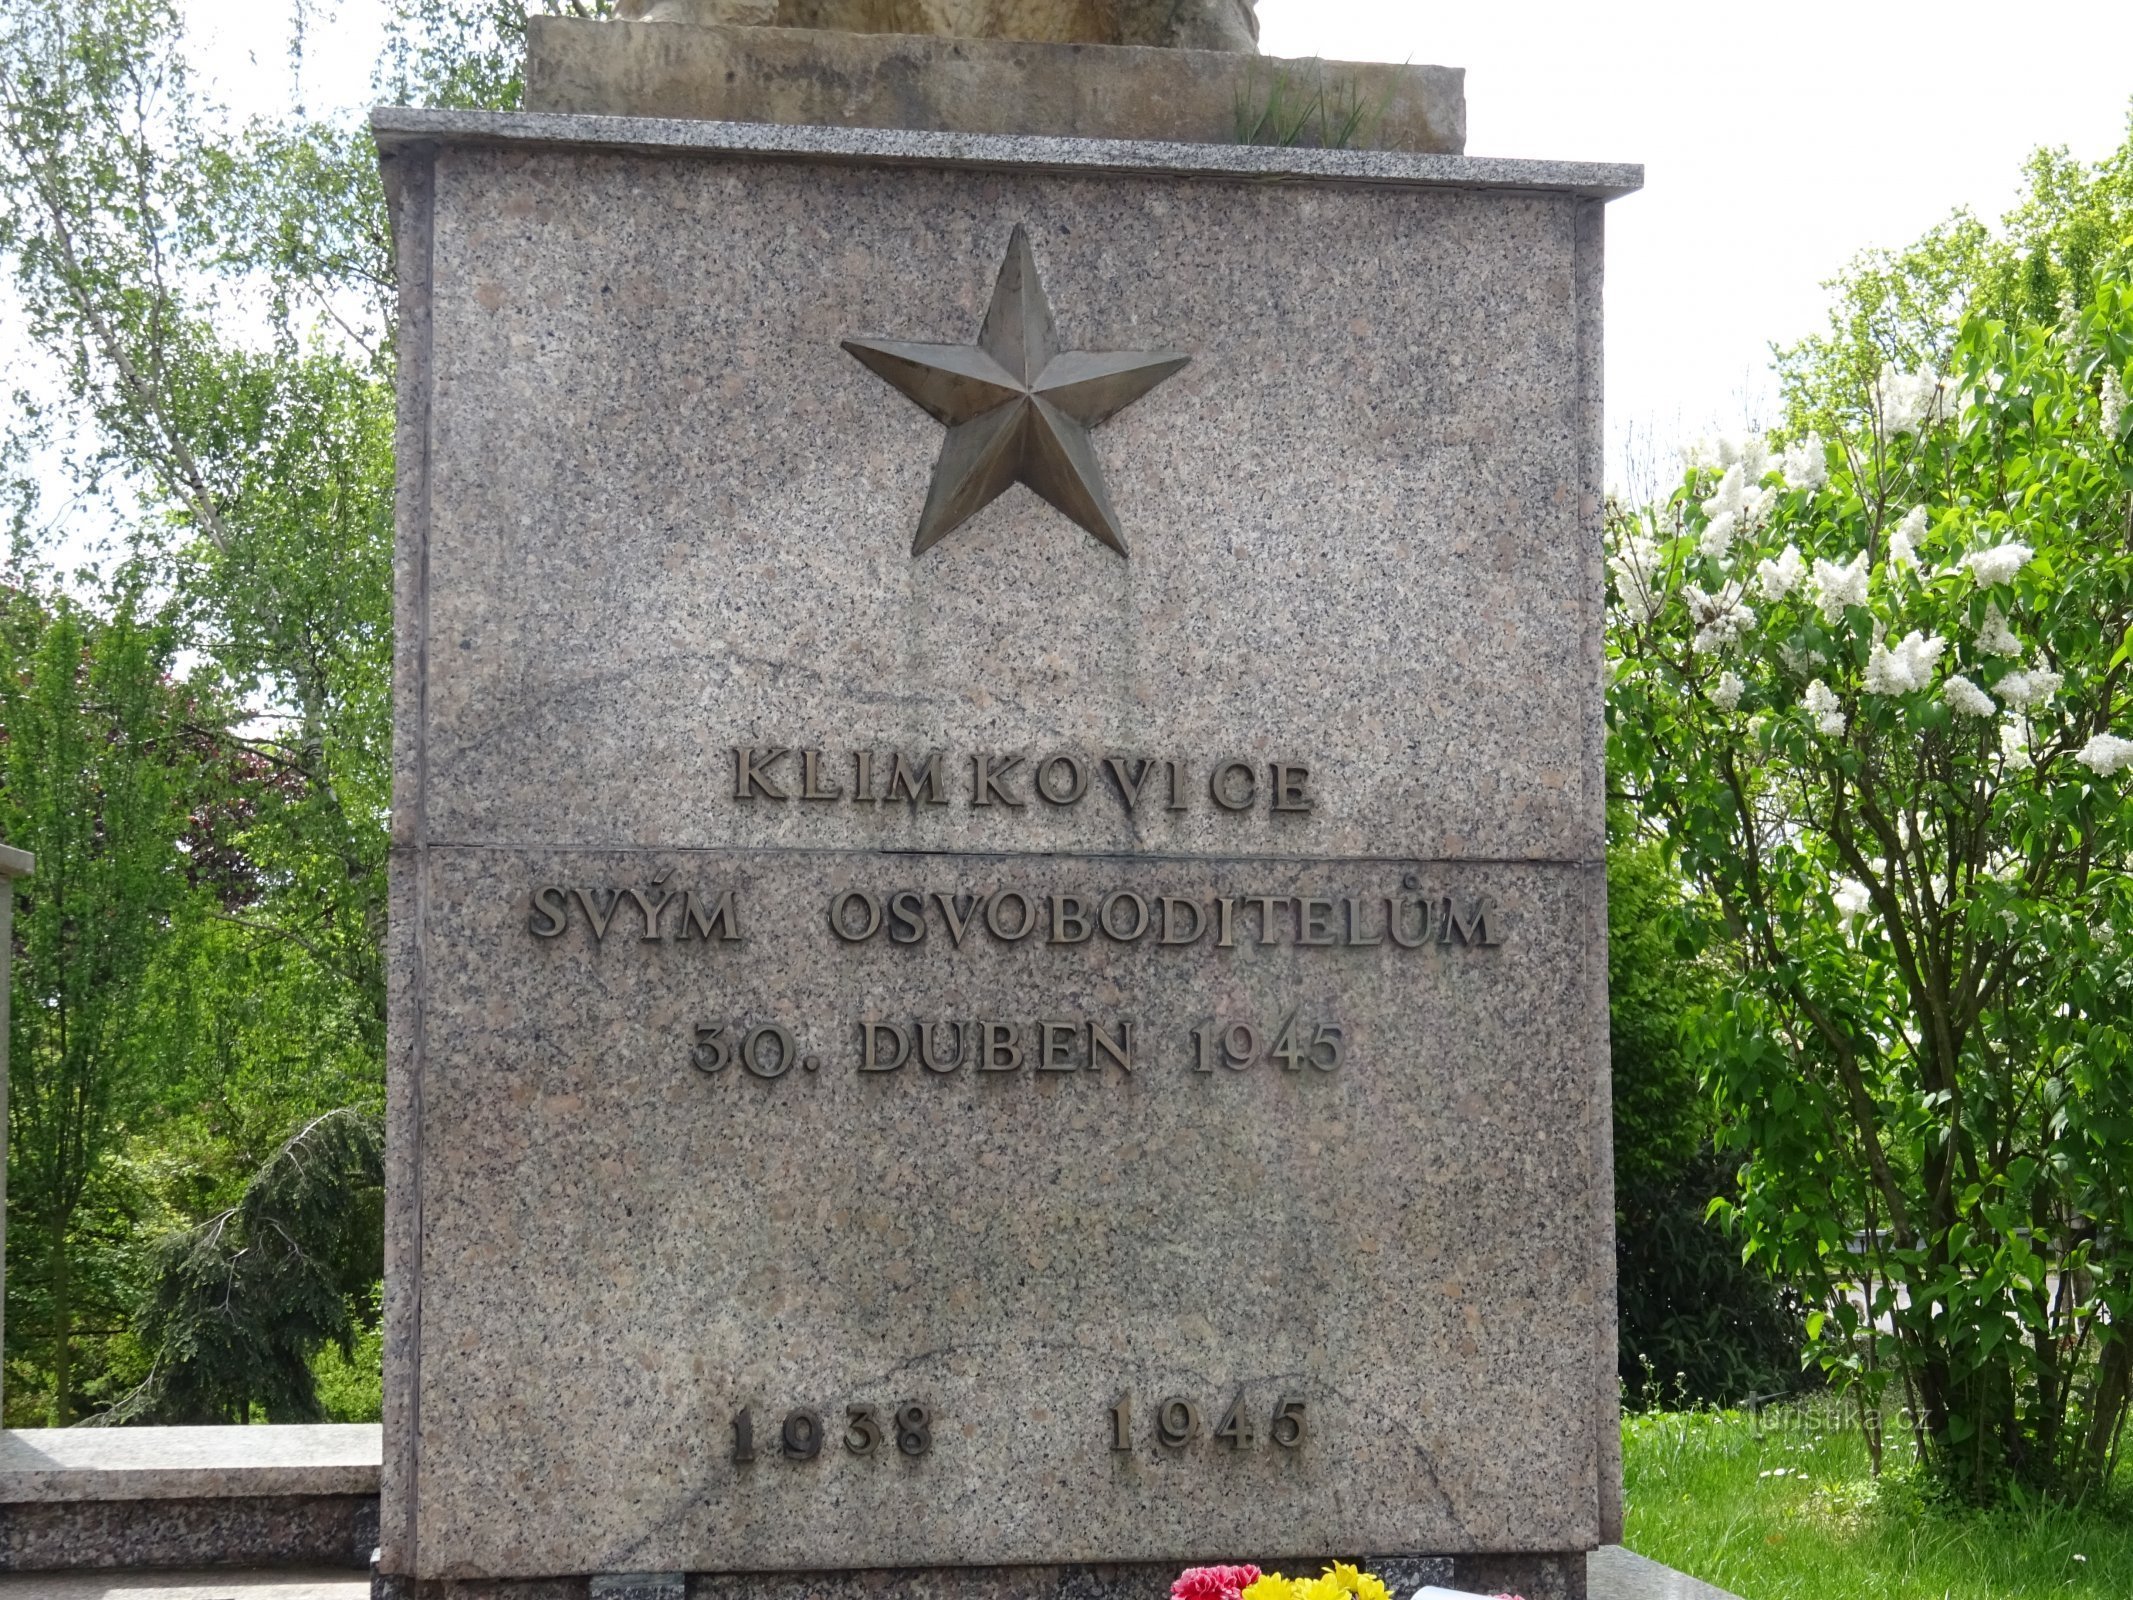 Klimkovice - 纪念碑二。 世界大战